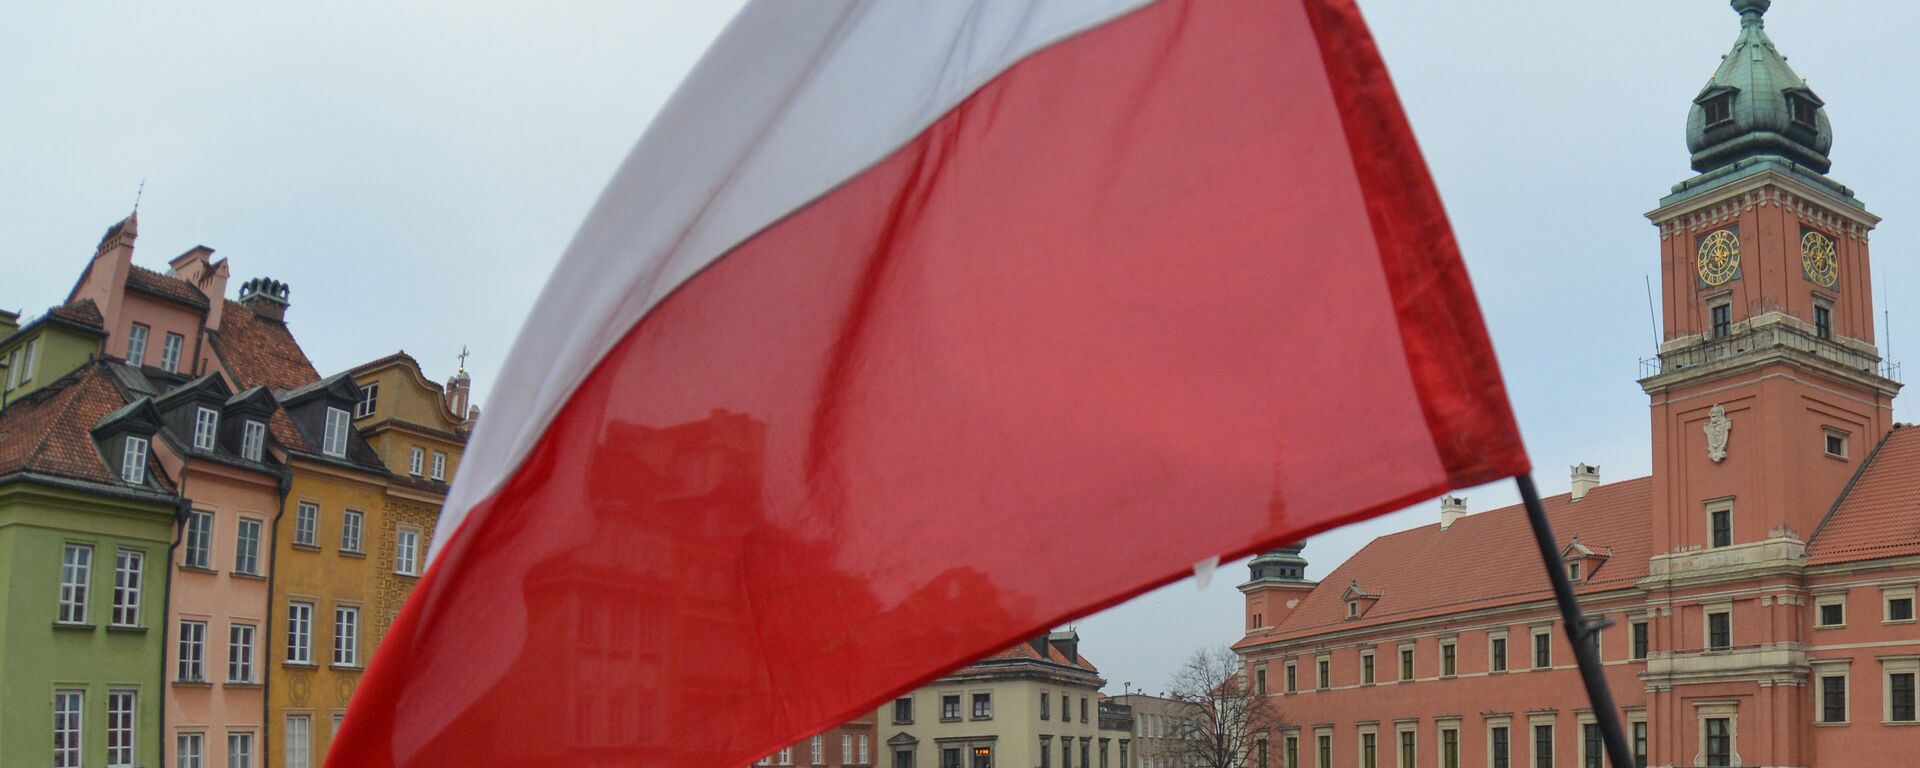 Флаг Польши - Sputnik Латвия, 1920, 13.12.2018